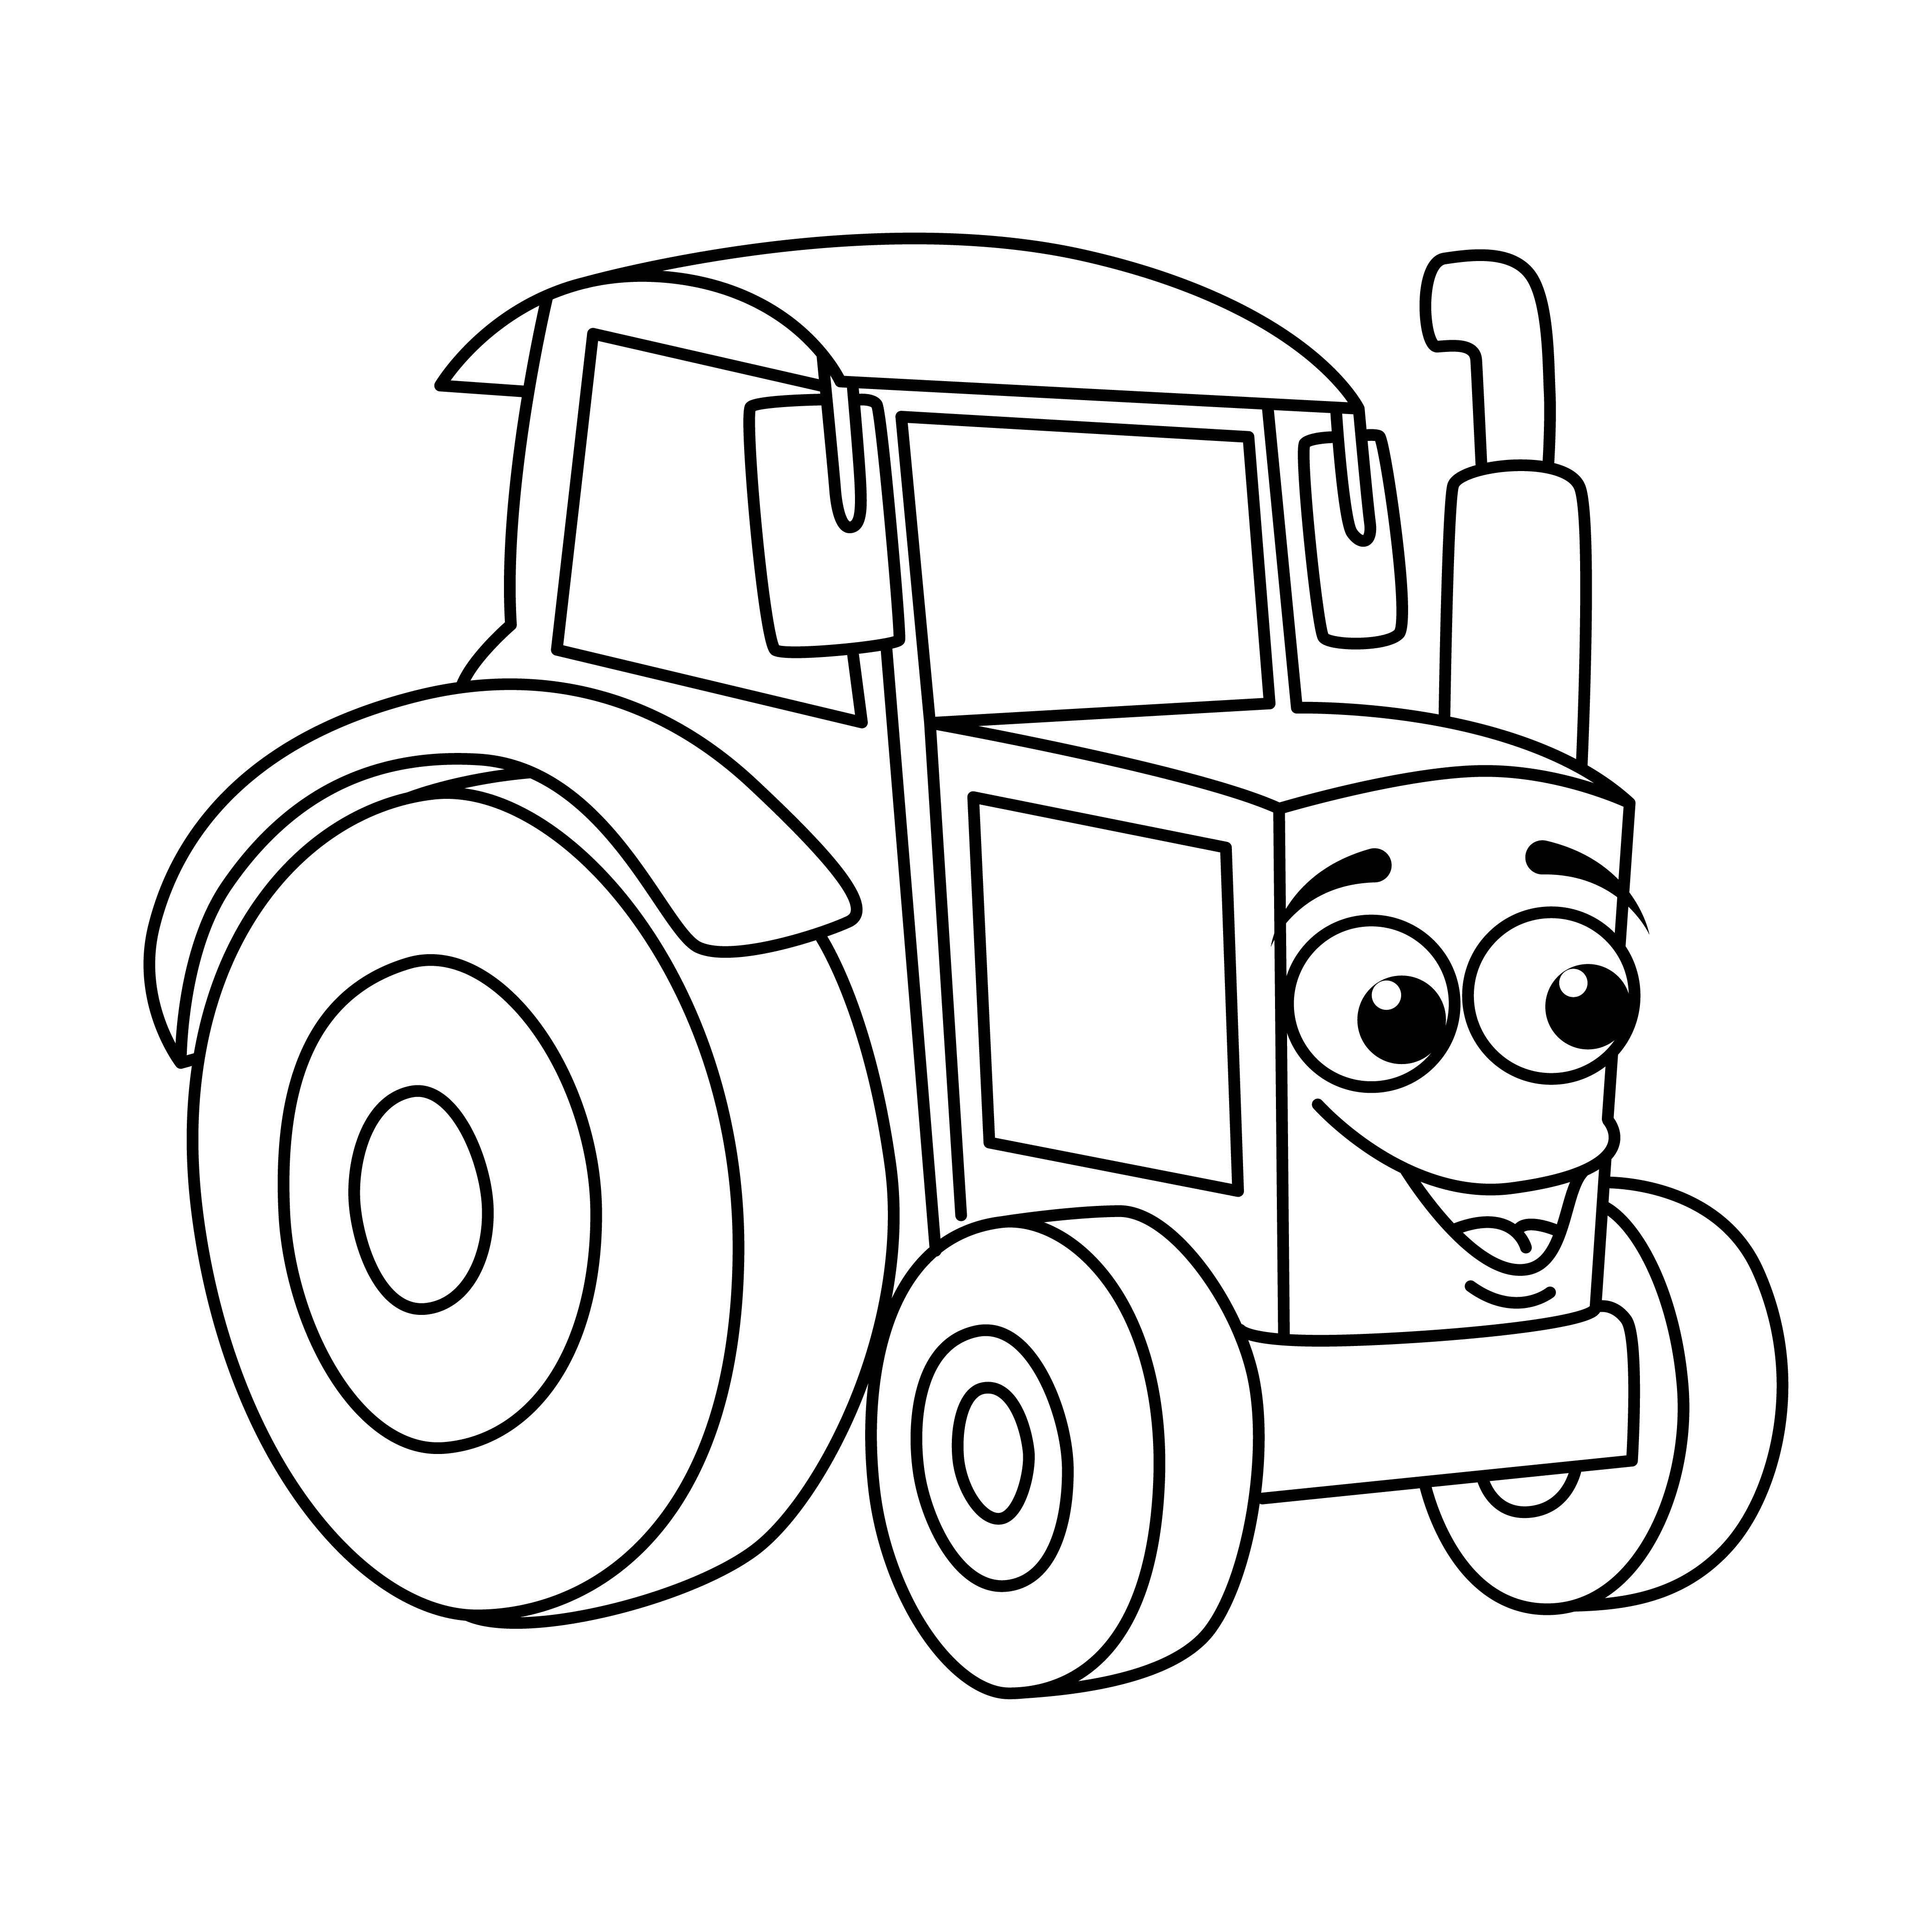 Раскраска трактор из мультфильма формата А4 в высоком качестве